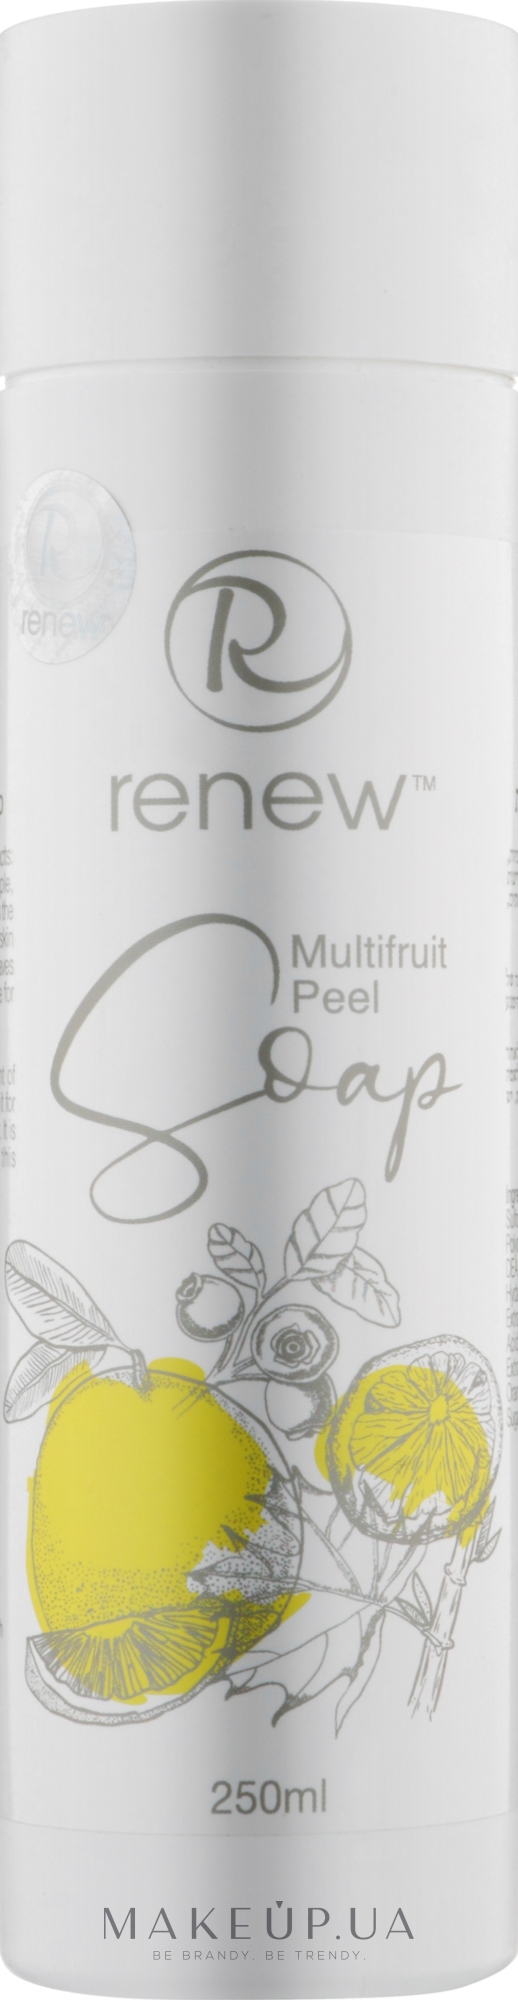 Мультифруктовое отшелушивающее мыло для лица - Renew Multifruit Peel Soap  — фото 250ml